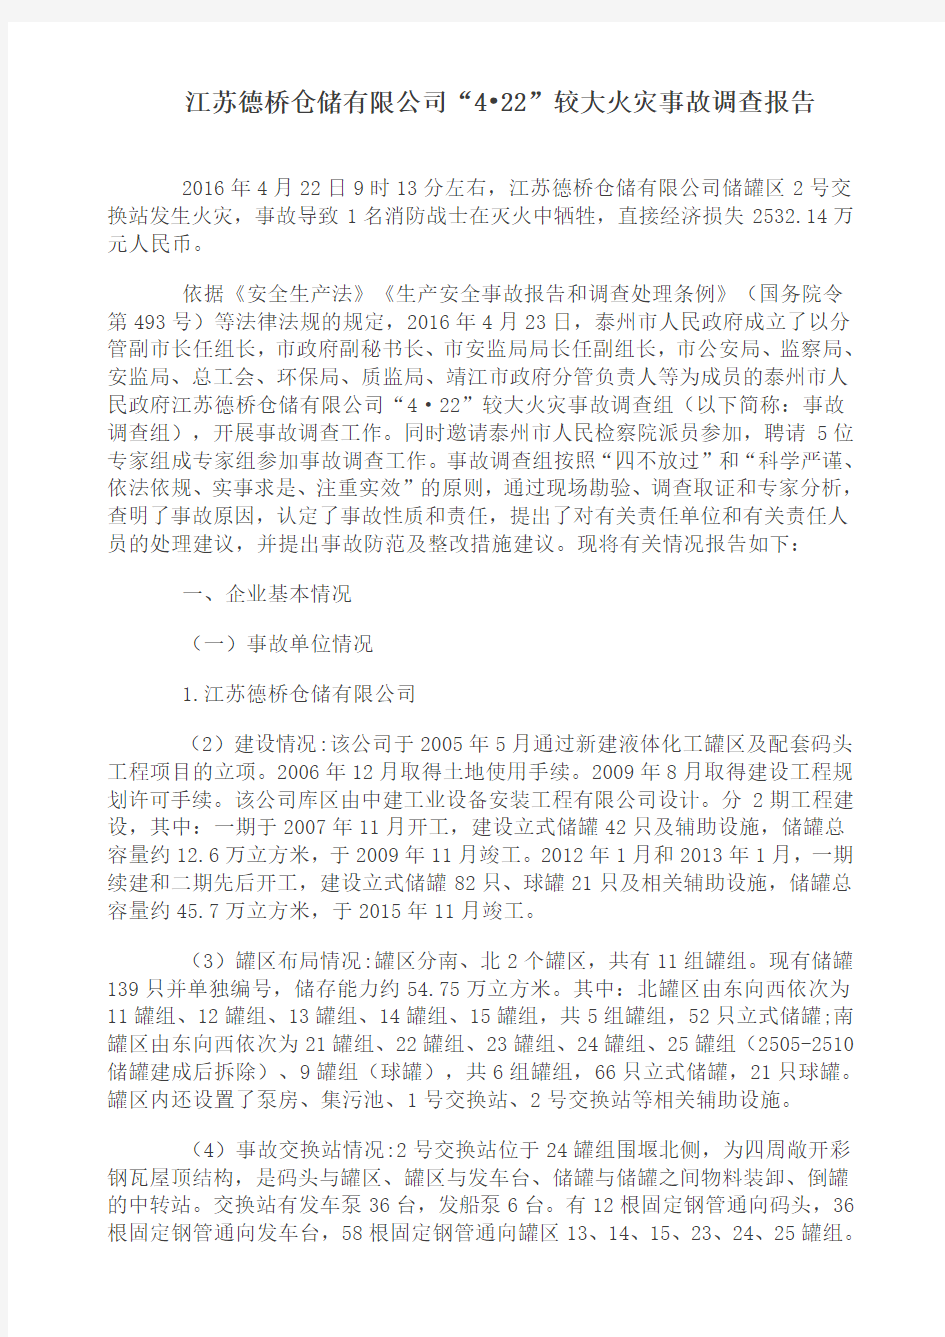 《江苏德桥仓储有限公司“4_22”较大火灾事故调查报告》